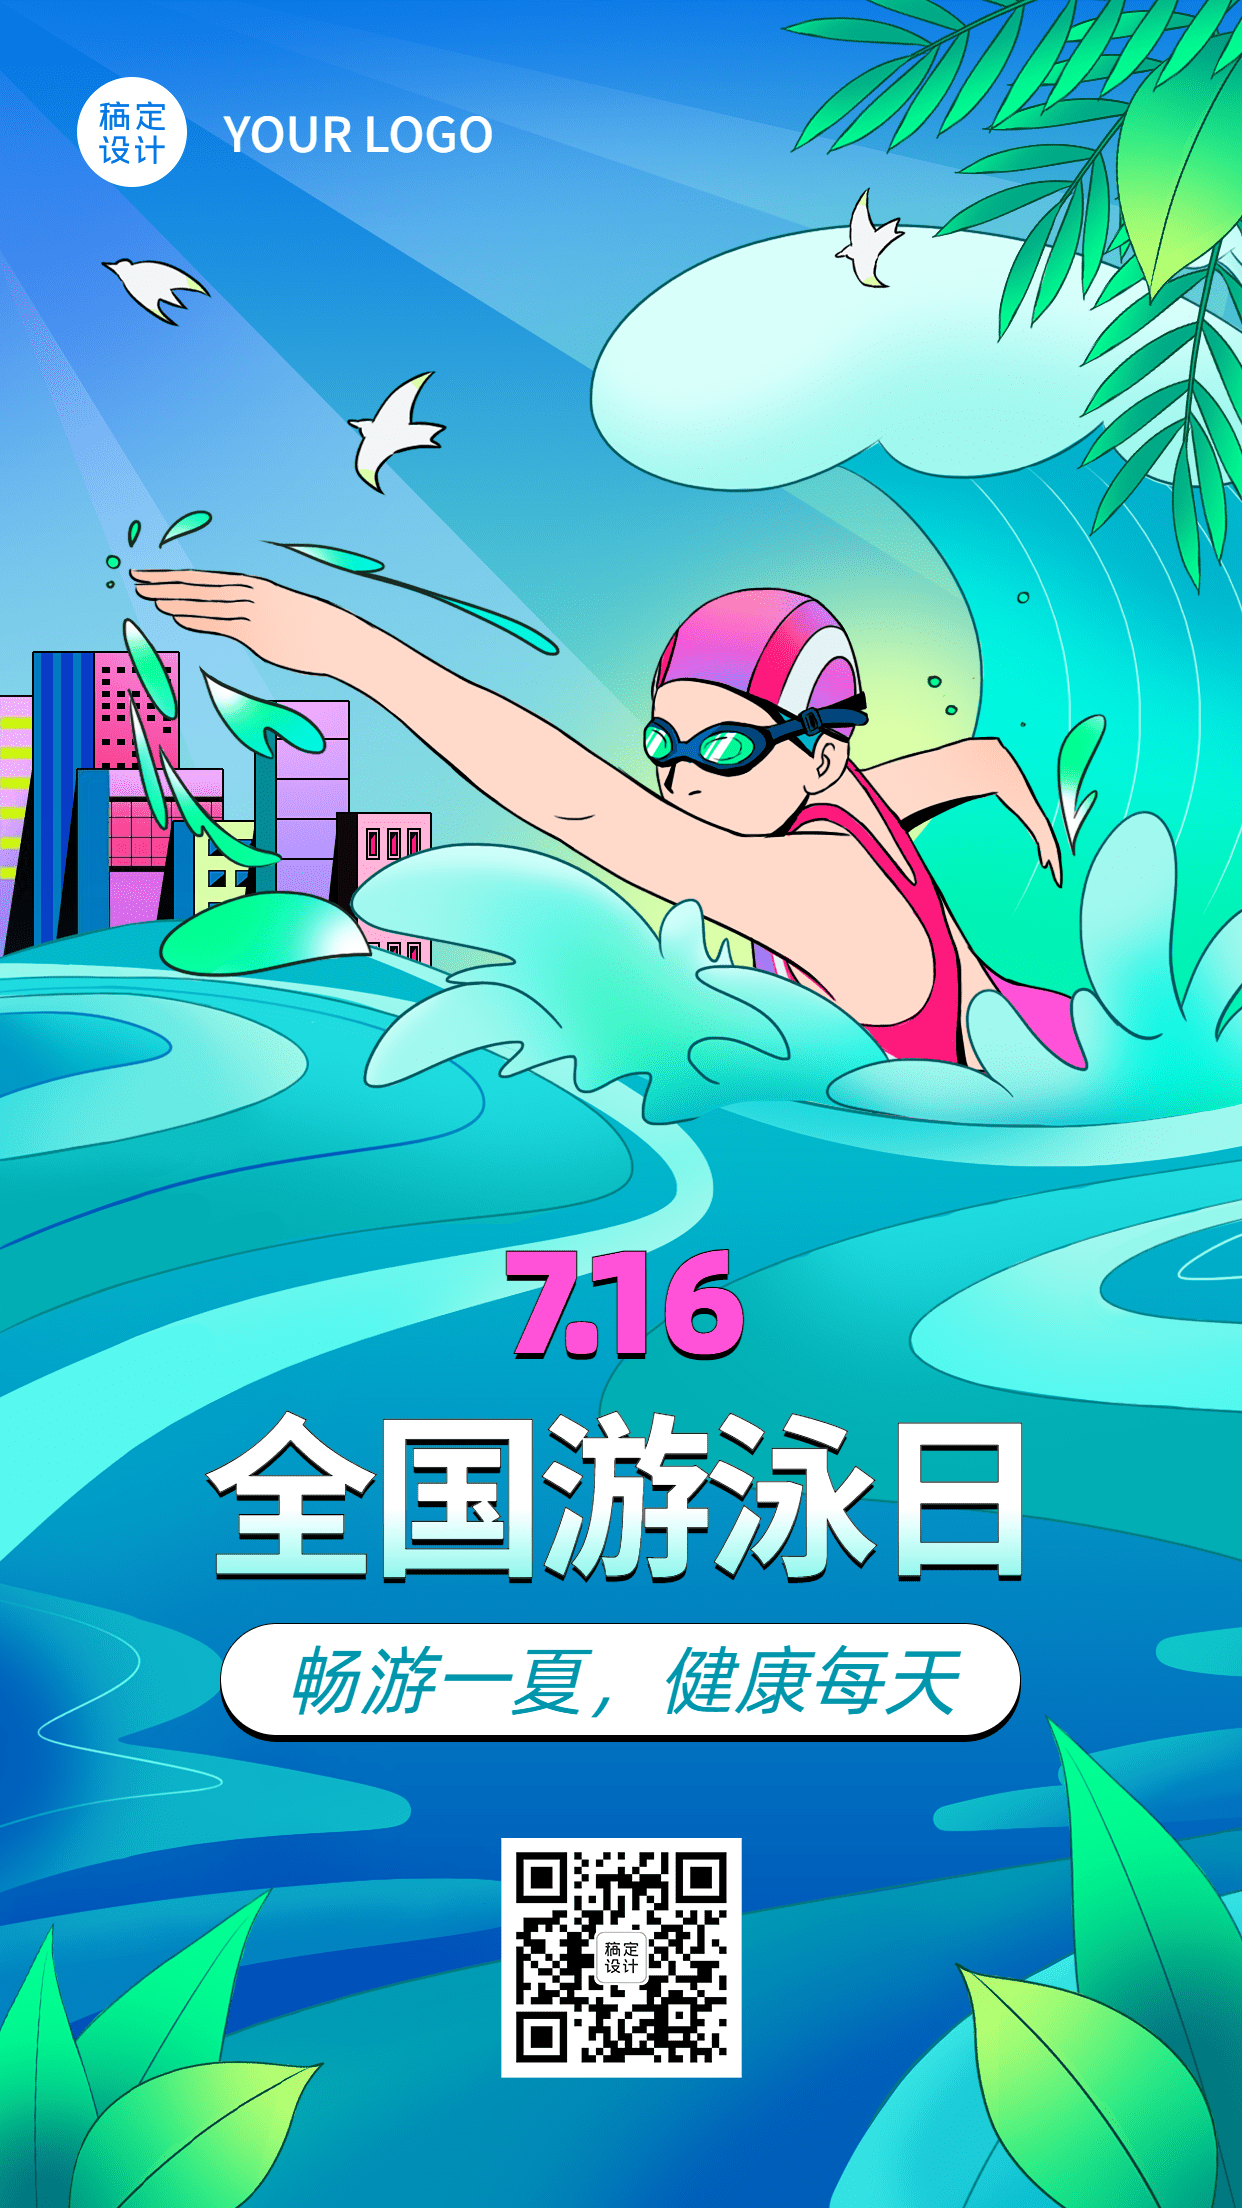 全国游泳日节日宣传手绘插画手机海报